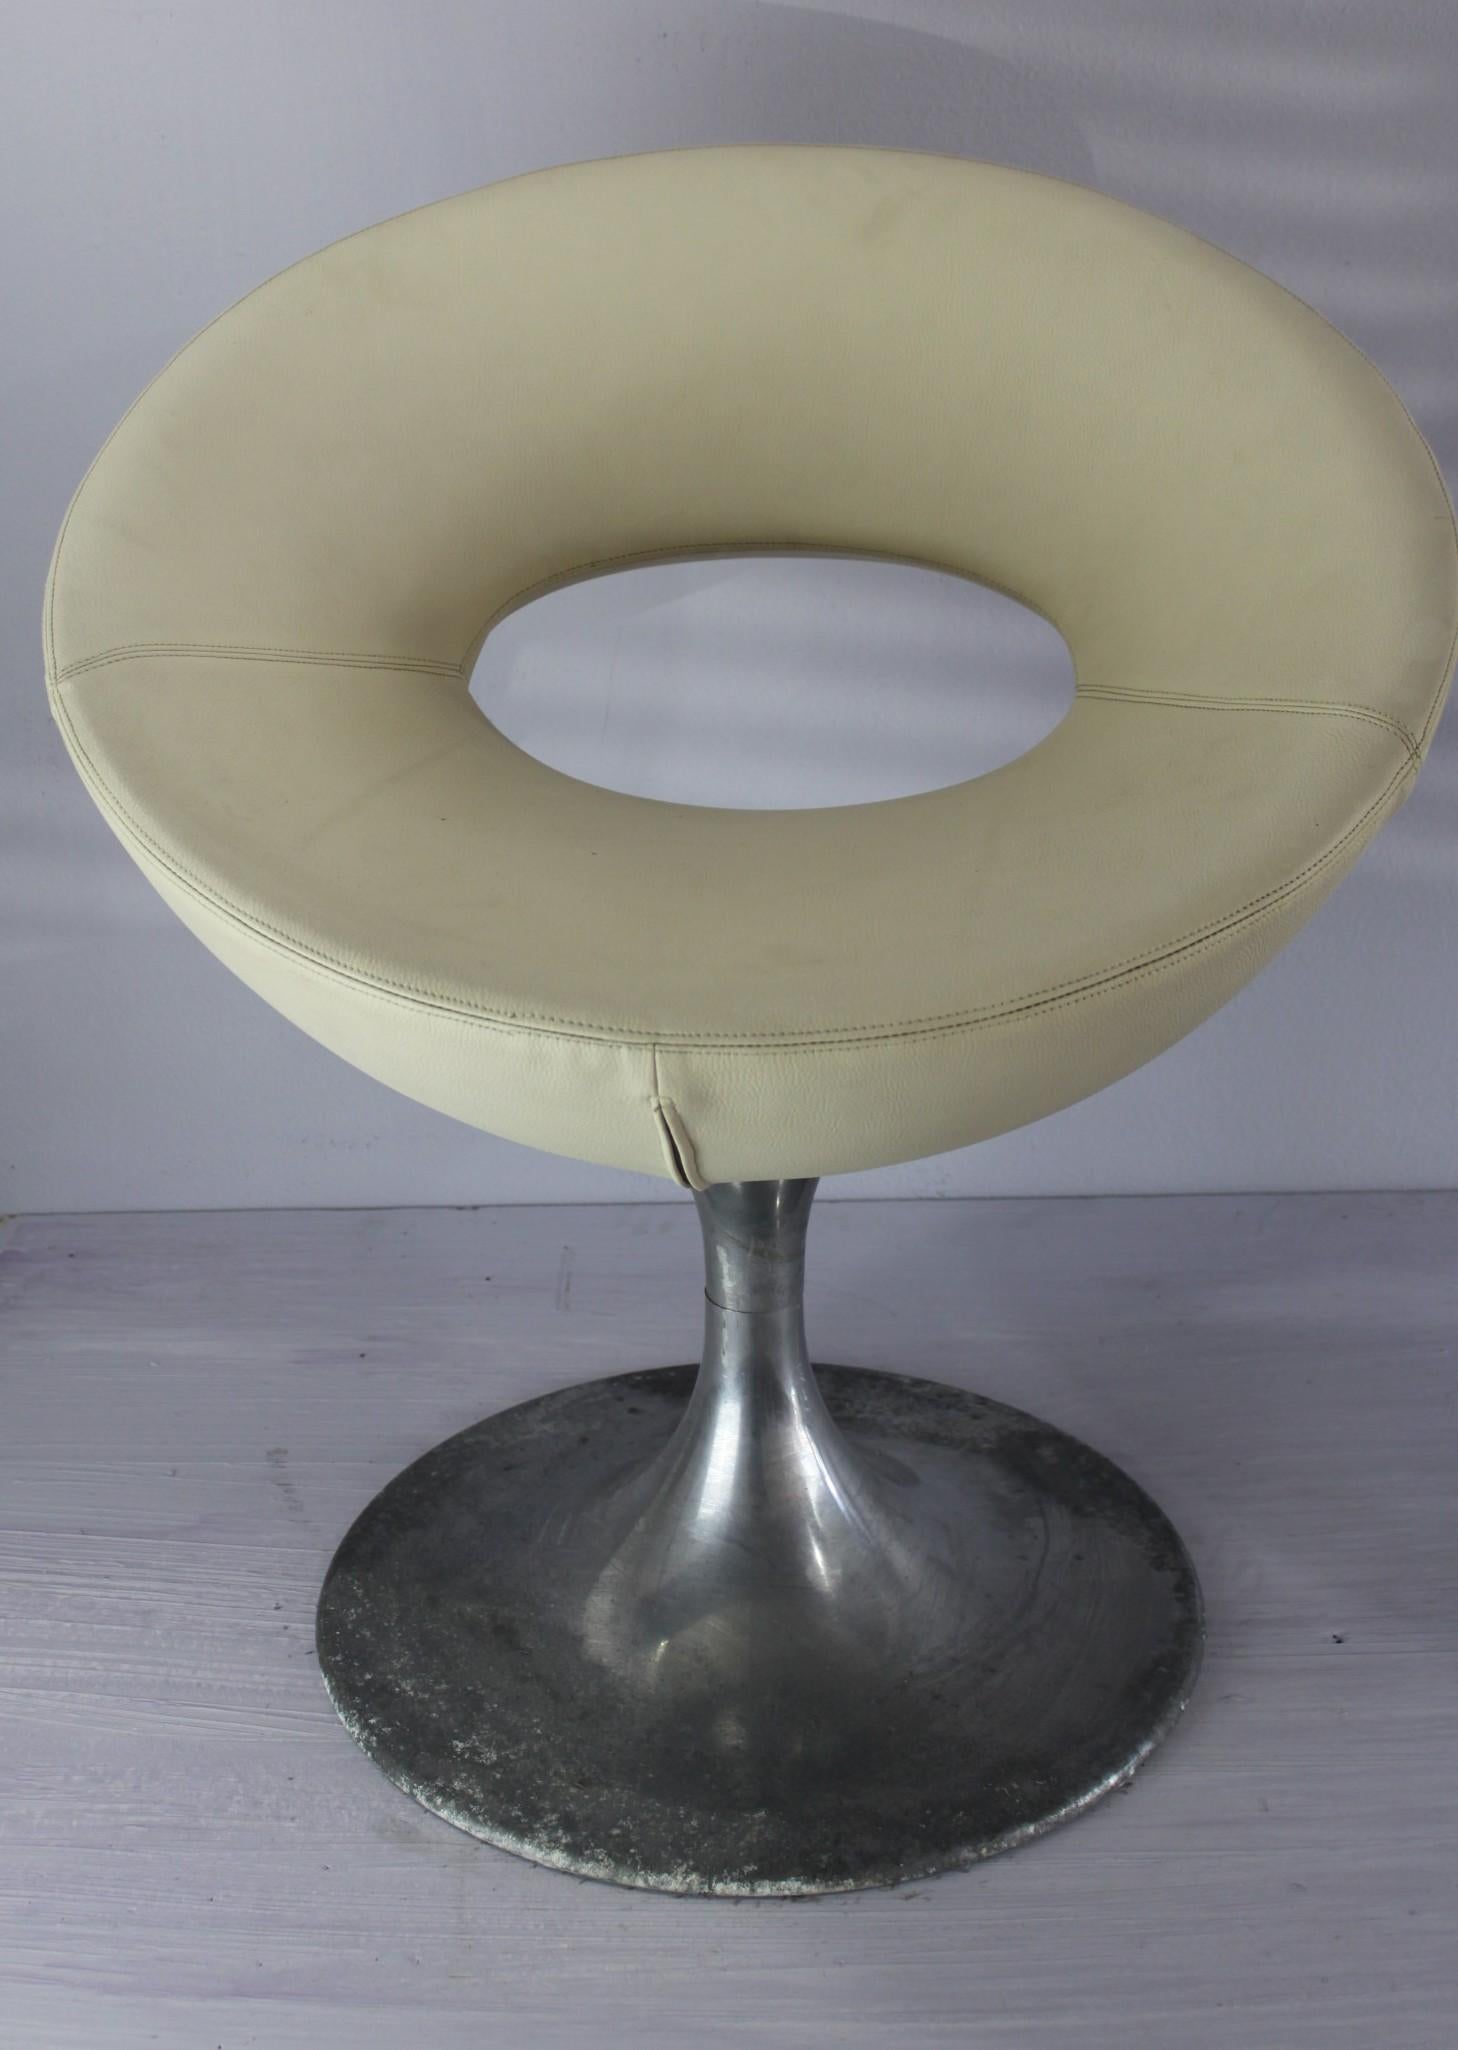 Découvrez un joyau caché dans le monde du mobilier - d'exquises chaises italiennes vintage fabriquées à partir de fonte d'aluminium de qualité supérieure, dotées d'un design spatial qui vous transportera dans une autre époque. Ces chaises sont dans